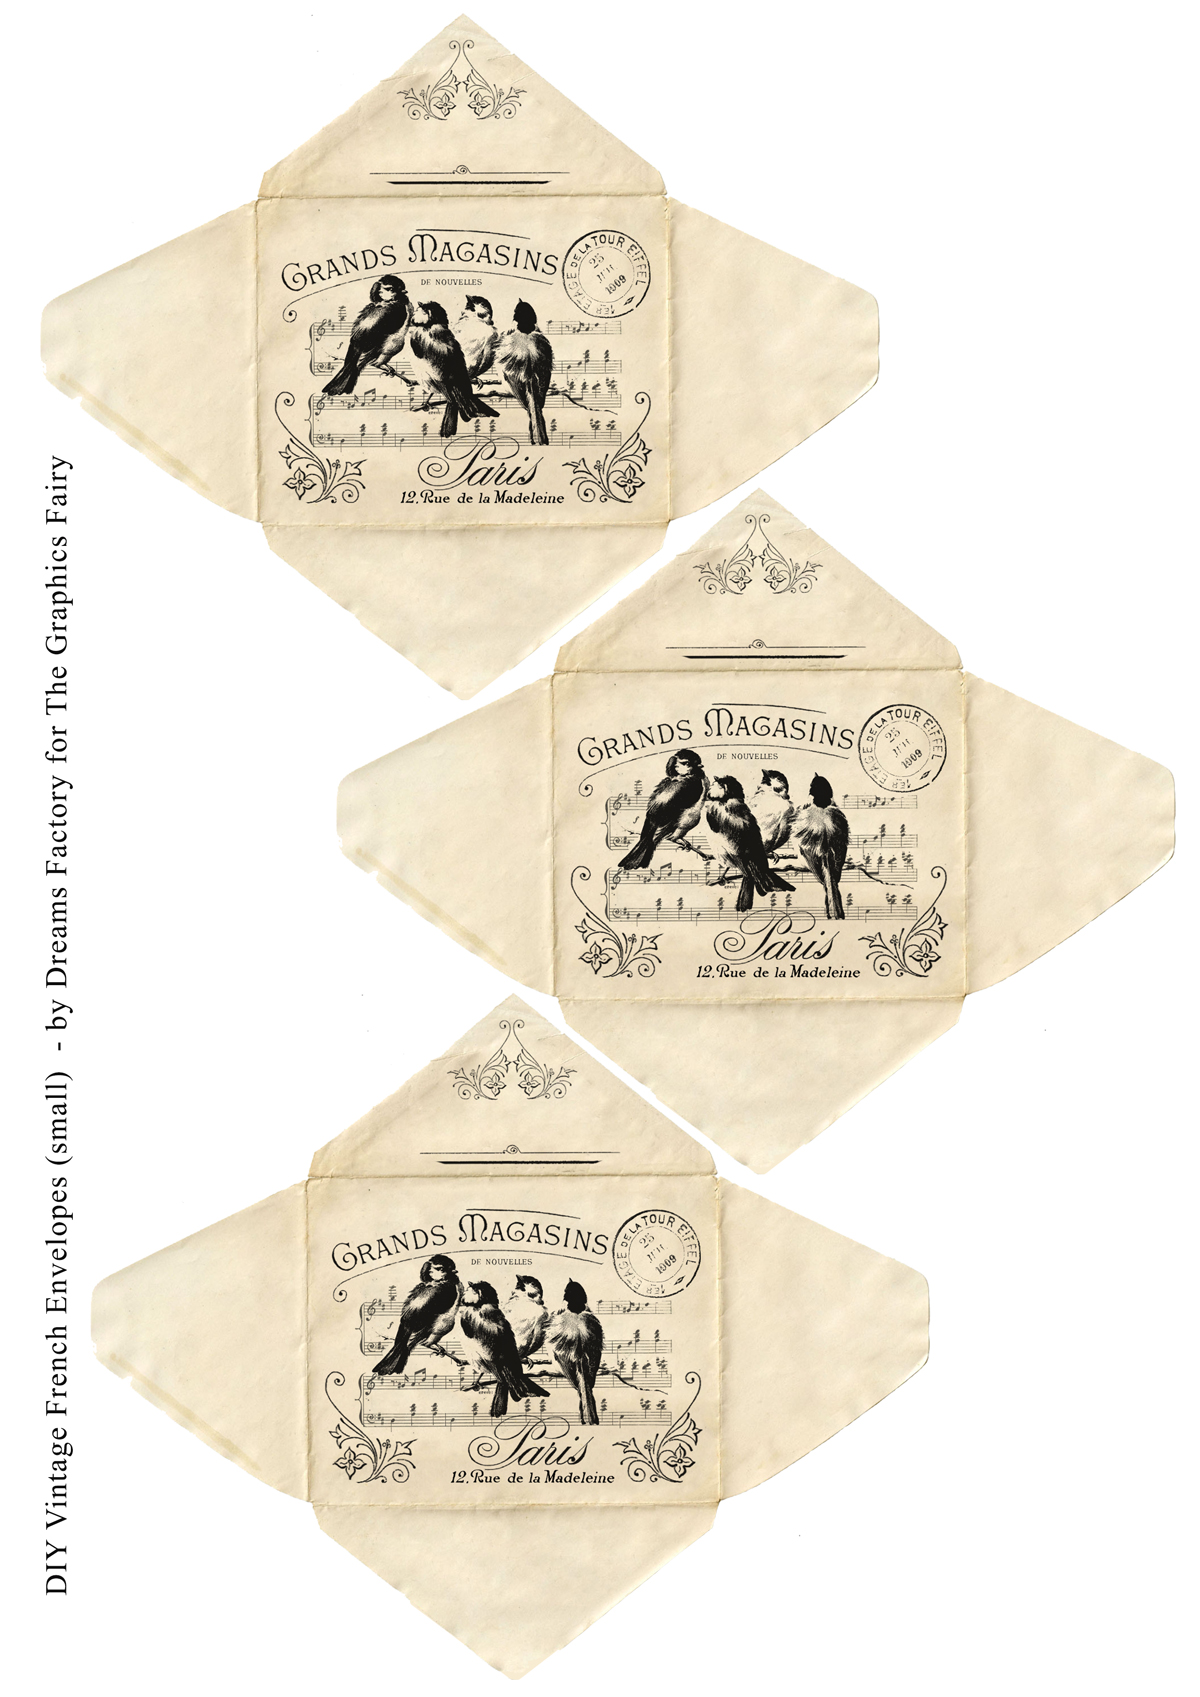 French bird collage on envelopes printable